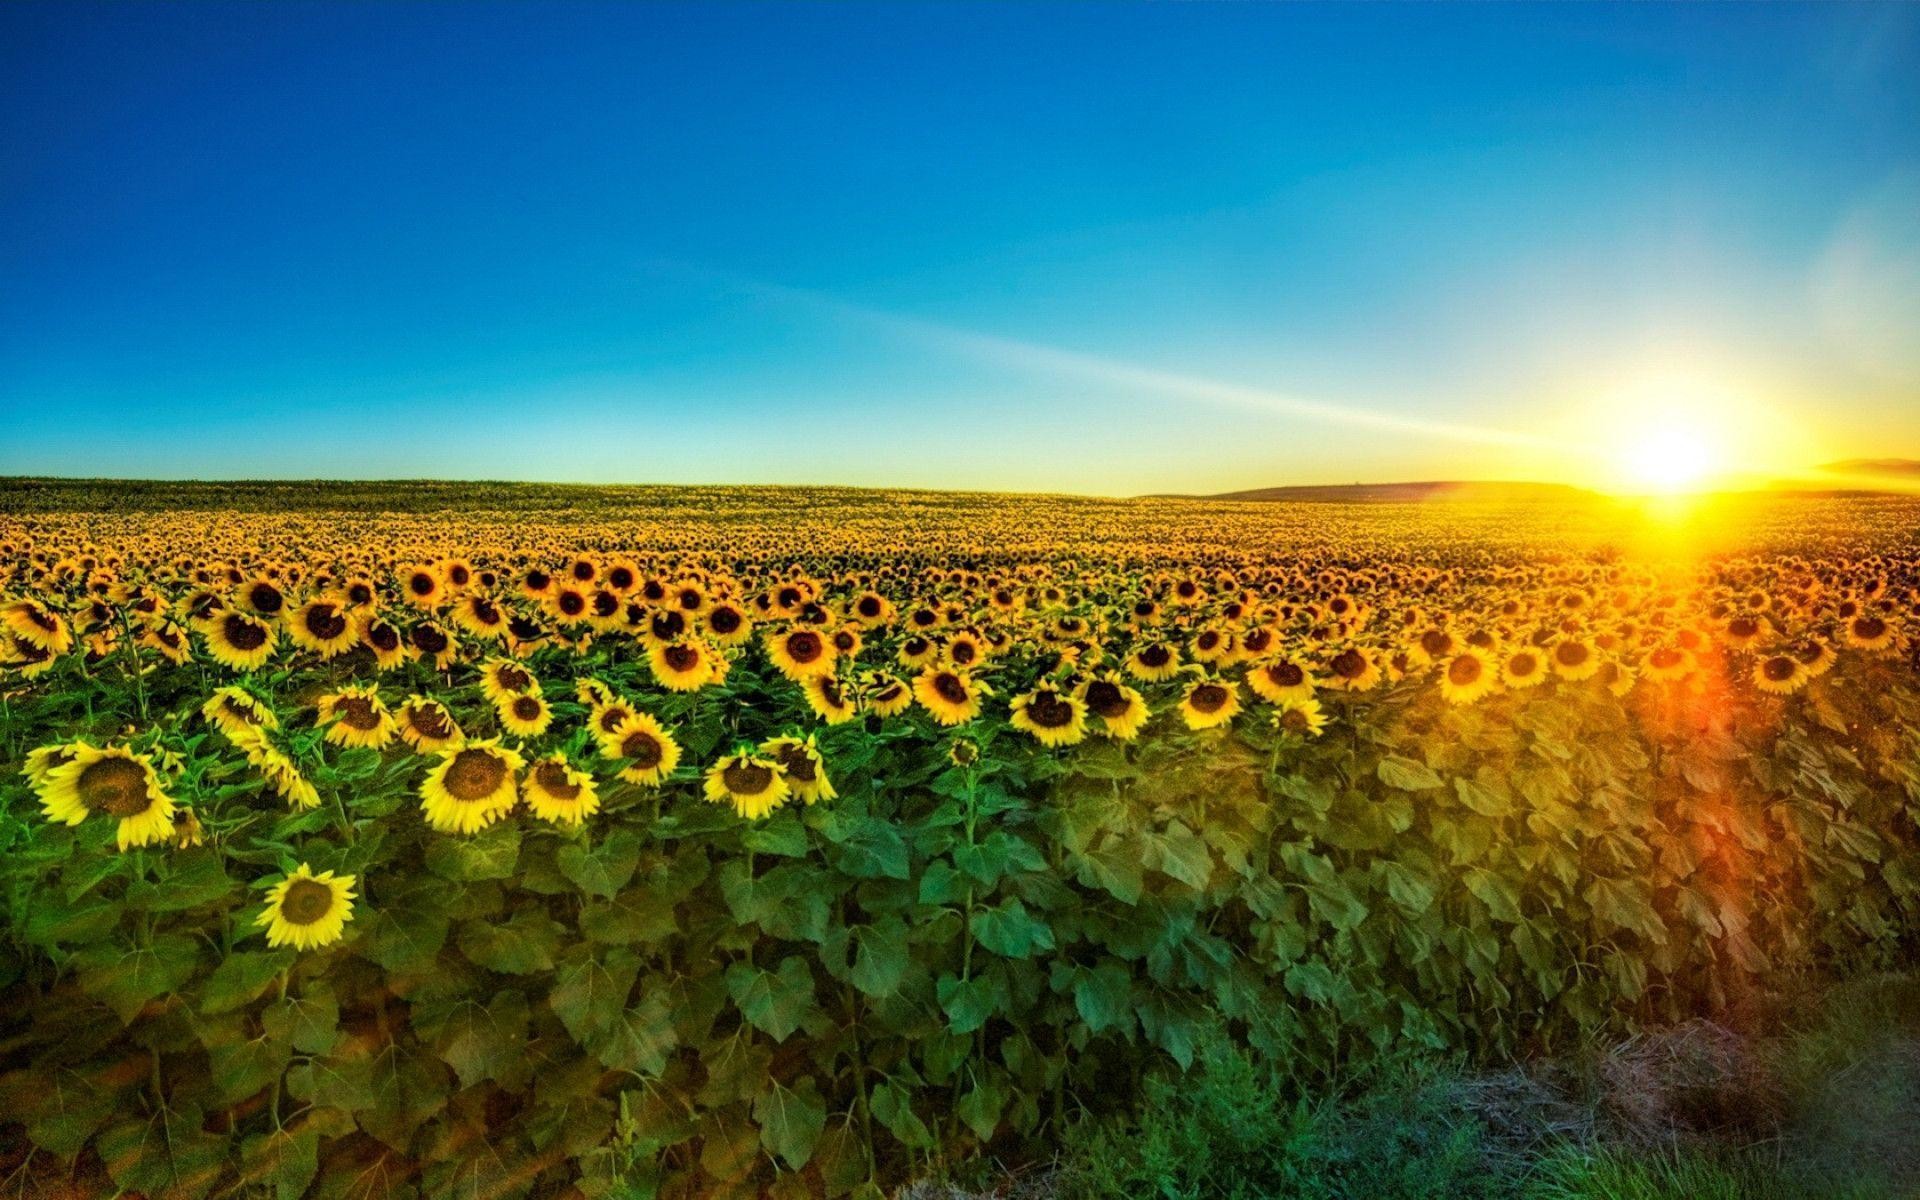 wallpaper cantik,nature,sunflower,sky,field,natural landscape